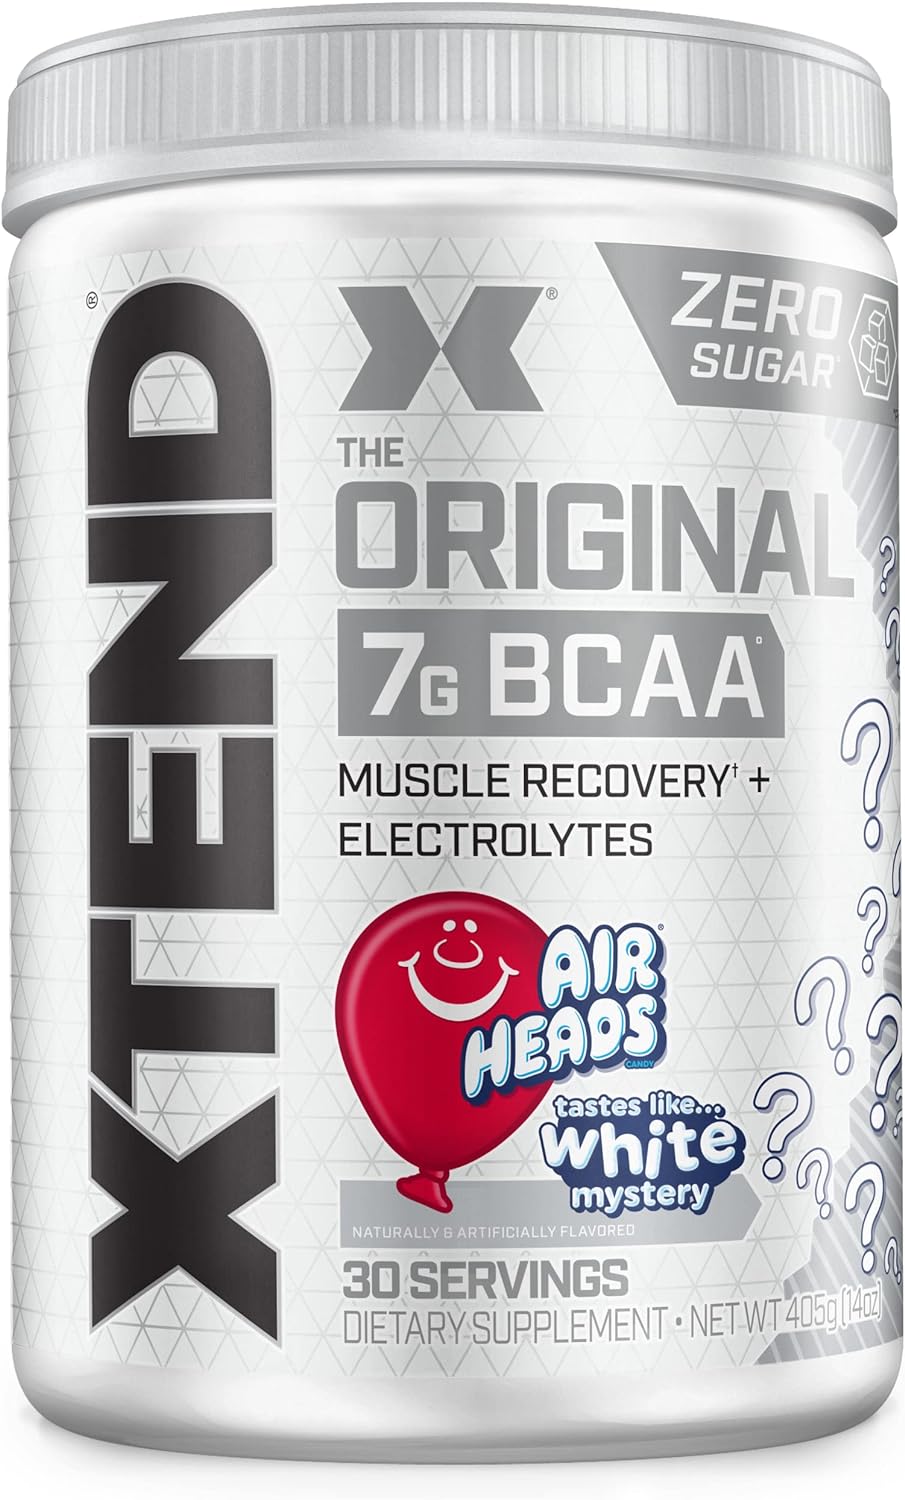 XTEND Original BCAA Powder Airheads Candy Flavor, 7g BCAA and 2.5g L-G